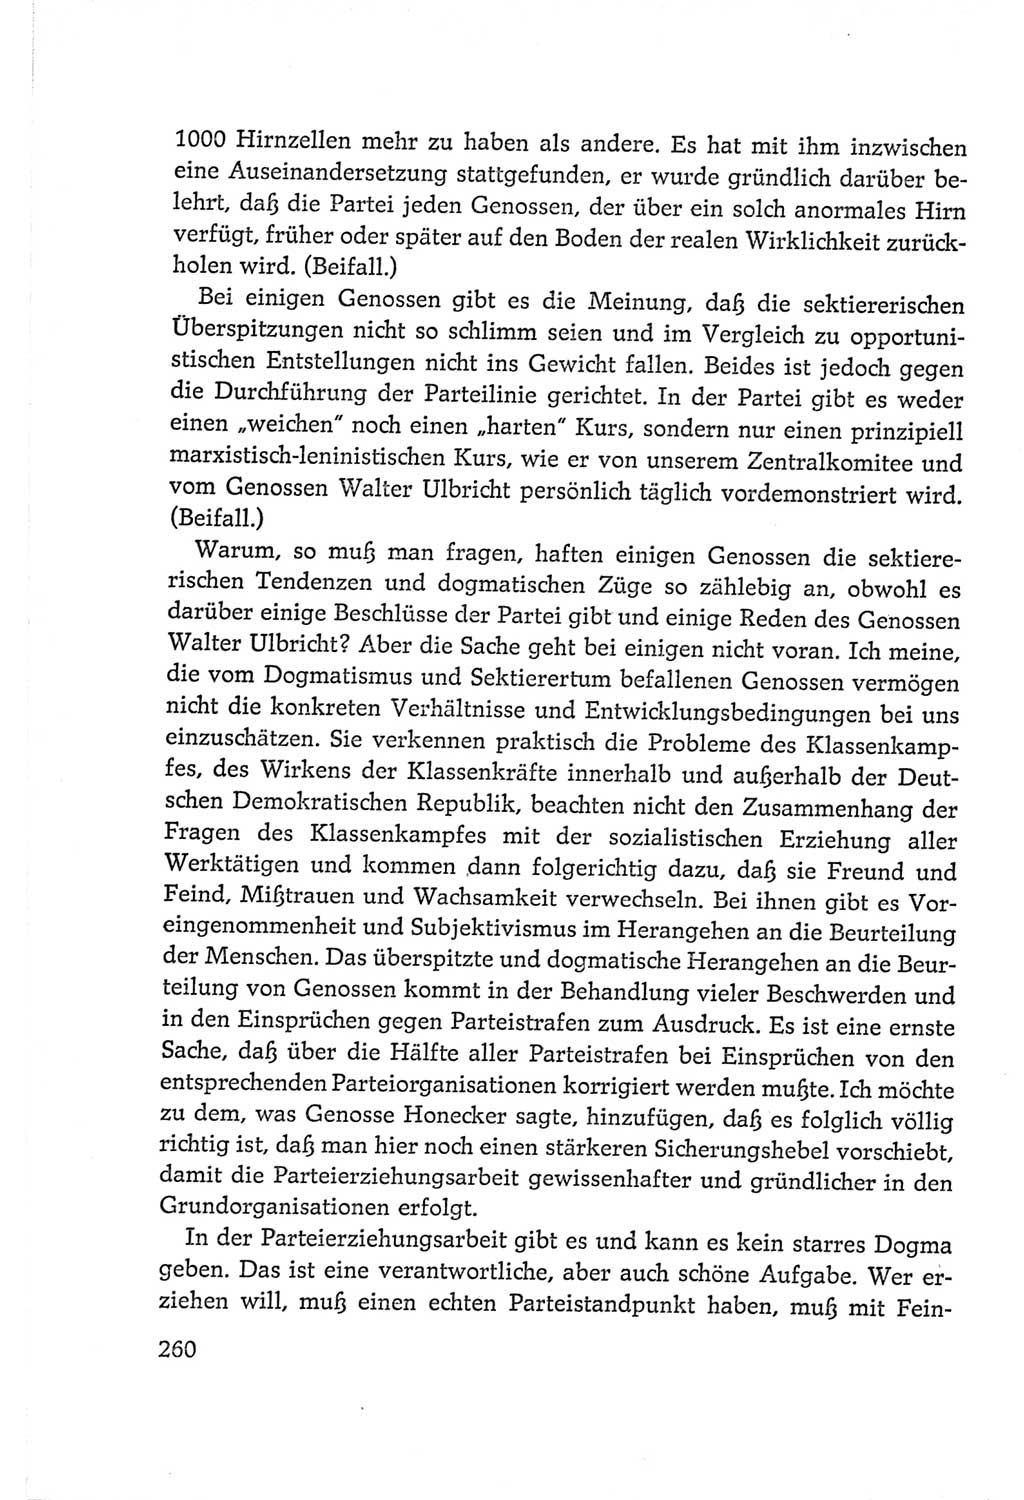 Protokoll der Verhandlungen des Ⅵ. Parteitages der Sozialistischen Einheitspartei Deutschlands (SED) [Deutsche Demokratische Republik (DDR)] 1963, Band Ⅱ, Seite 260 (Prot. Verh. Ⅵ. PT SED DDR 1963, Bd. Ⅱ, S. 260)